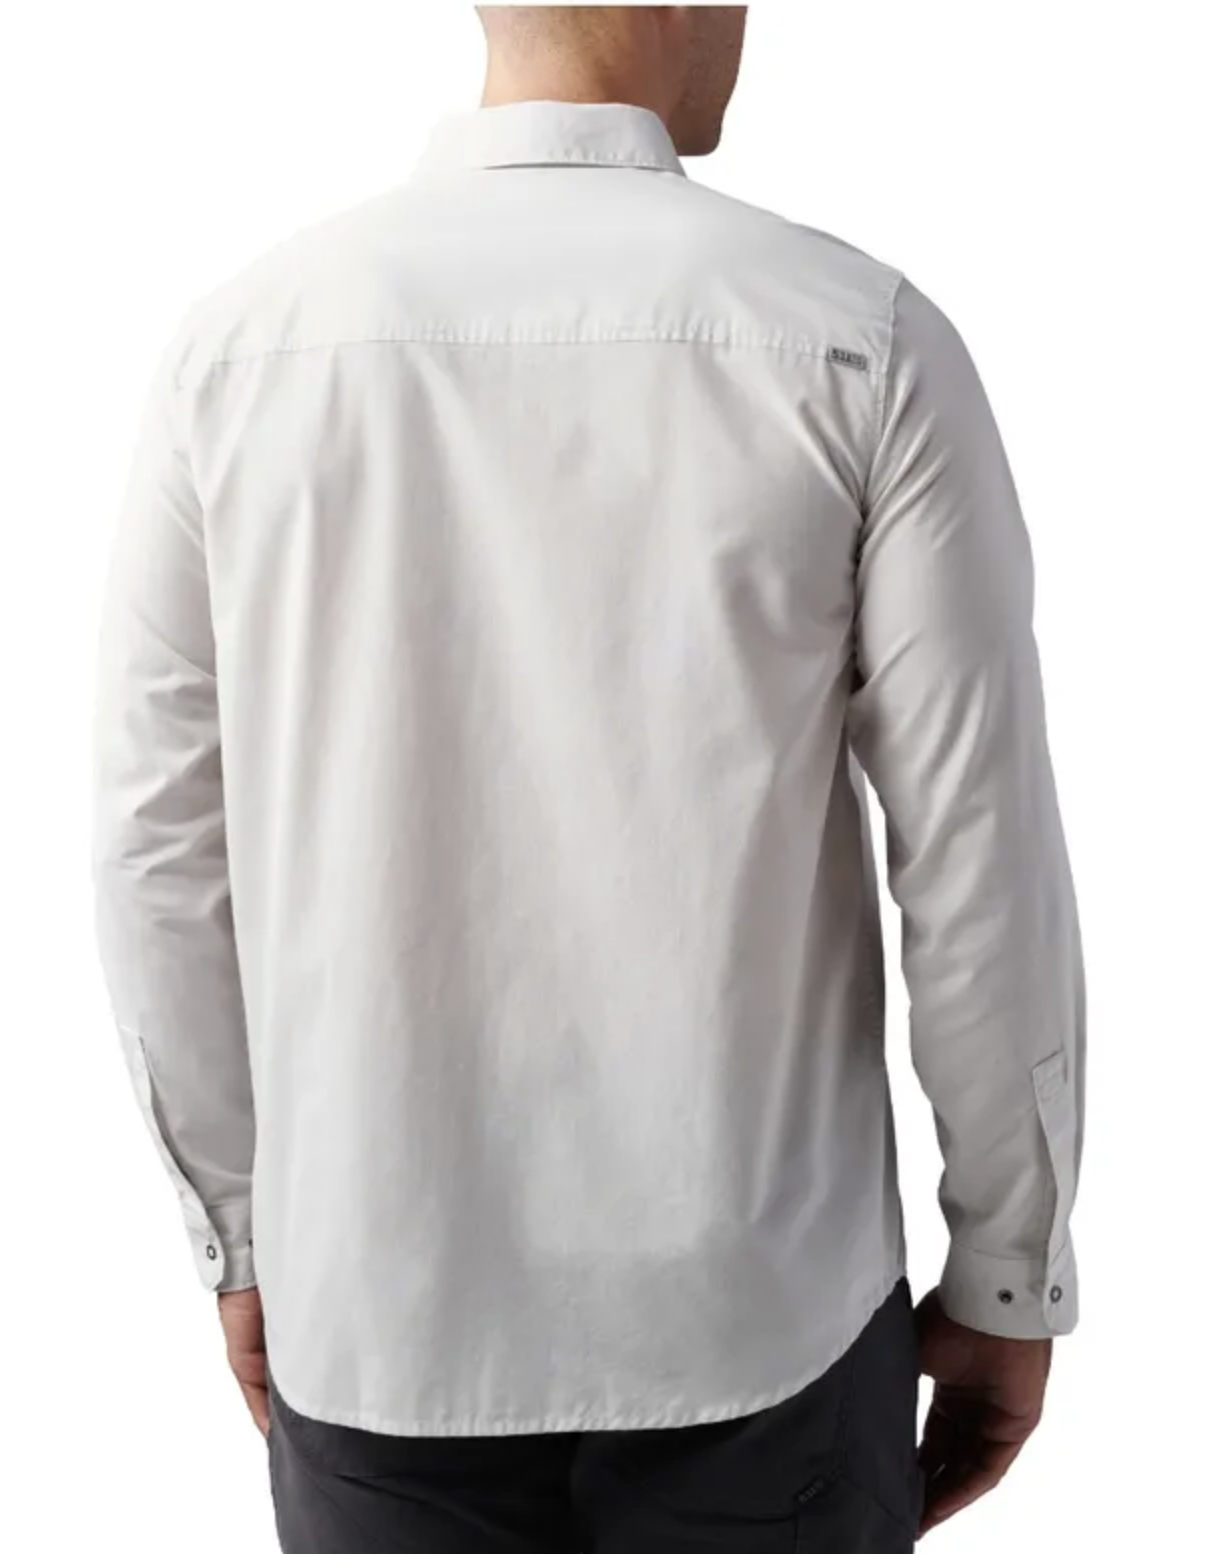 5.11 - Igor Solid Long Sleeve Shirt - Cinder (089)